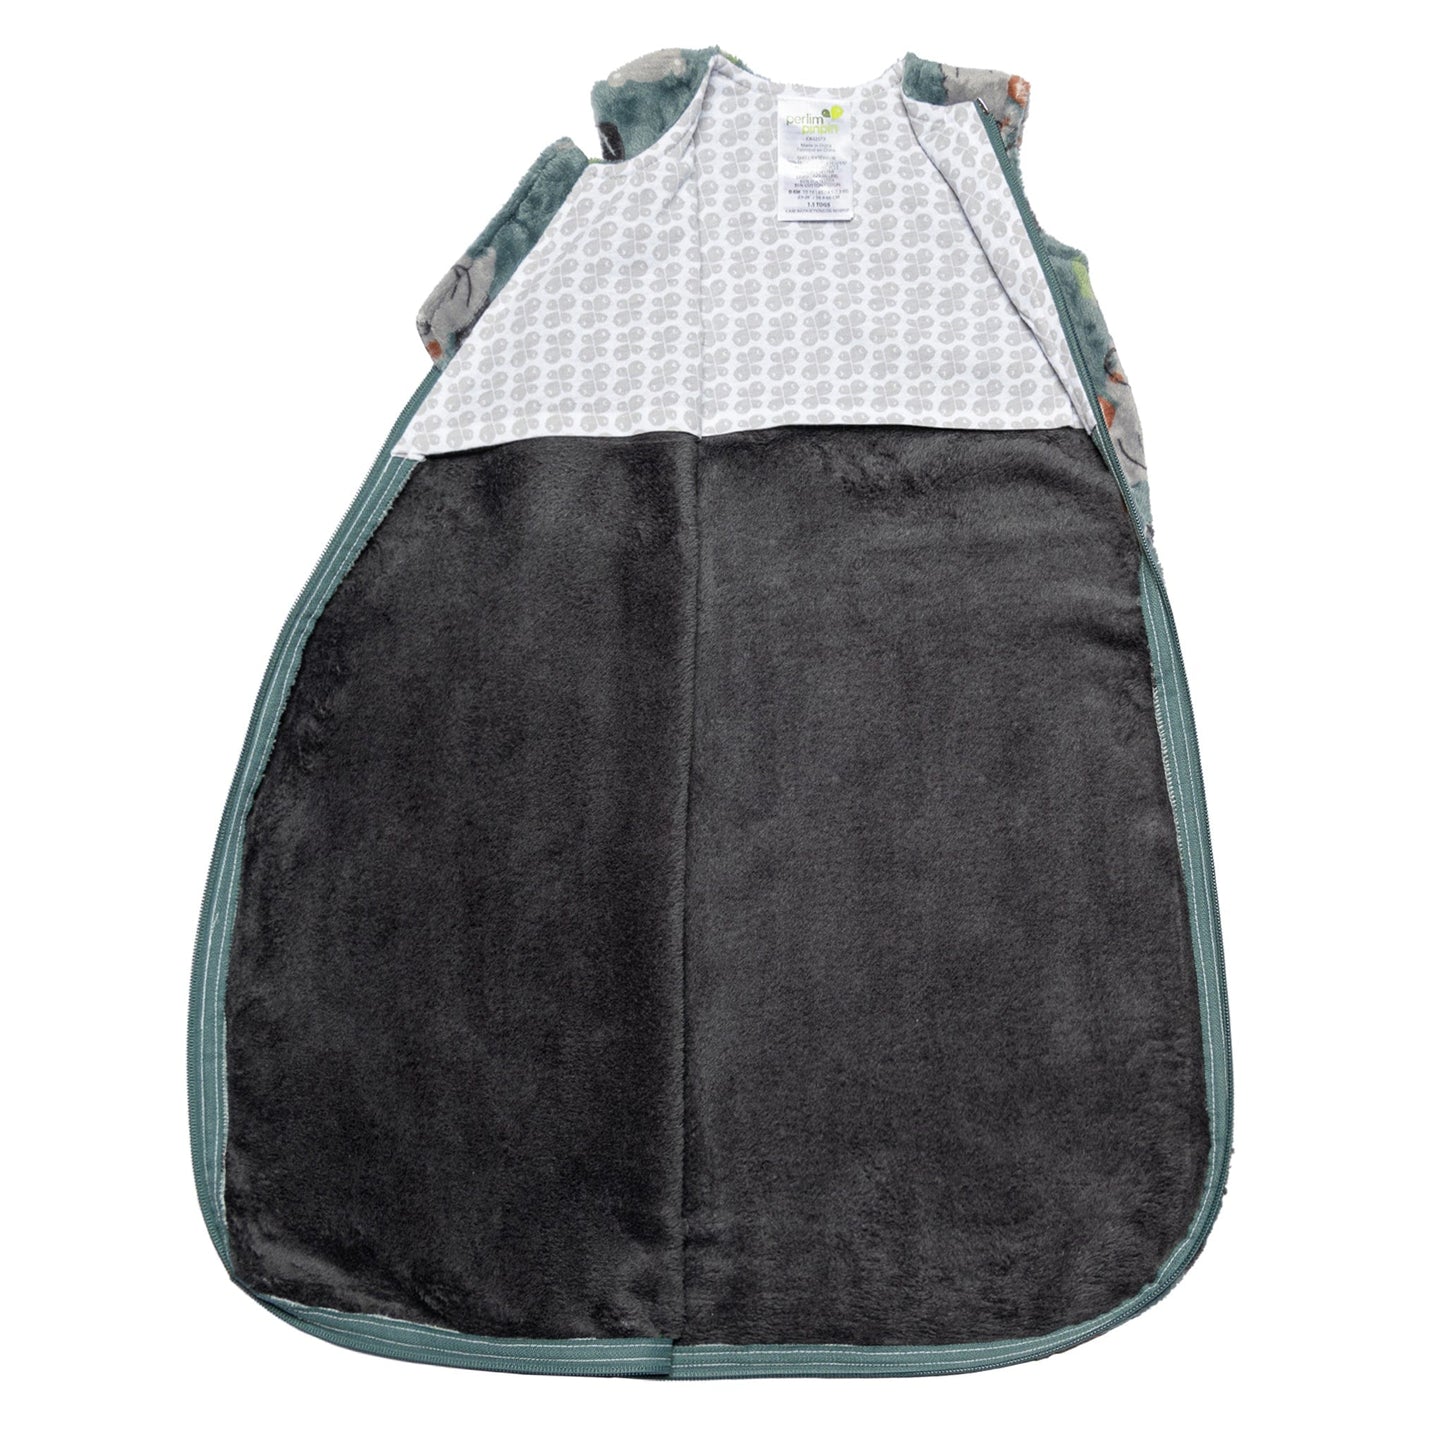 Plush sleep bag - Beavers (1.5 Togs)